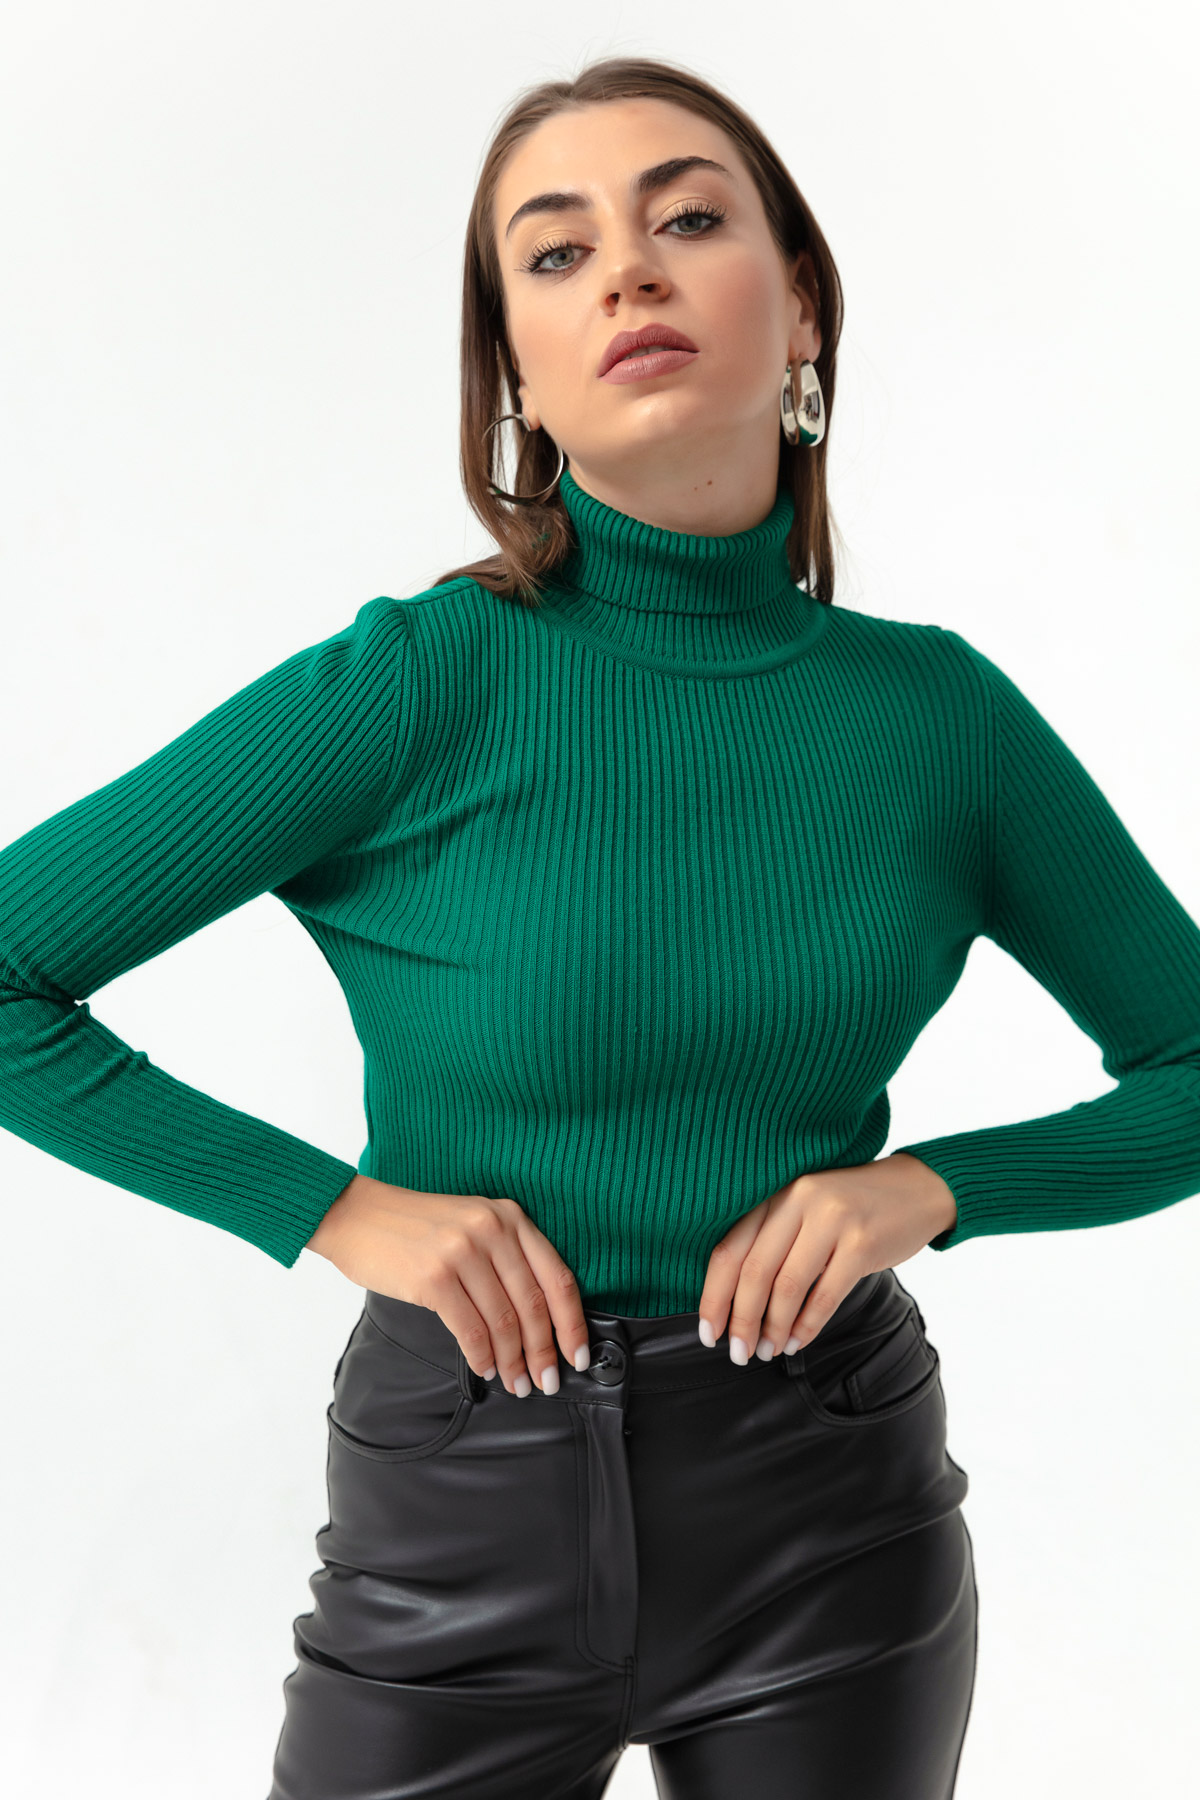 Women's Emerald Green Turtleneck Knitwear Sweater